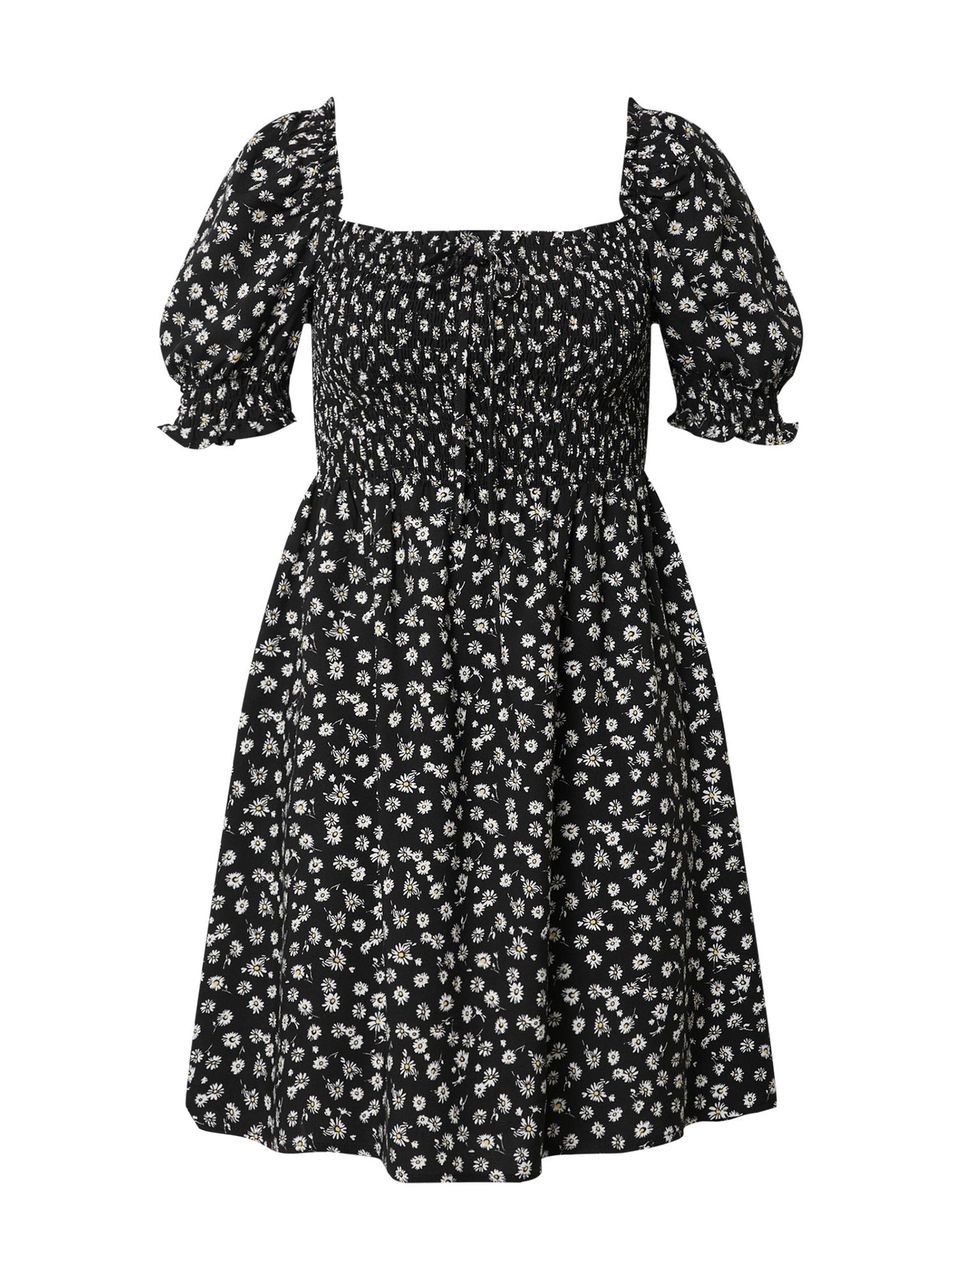 Das luftige Minikleid mit Blümchen-Muster ist die perfekte Wahl für entspannte Sommerabende und der ultimative Beweis, dass Schwarz nicht gleich düster aussehen muss. Von Edited, ca. 60 Euro.